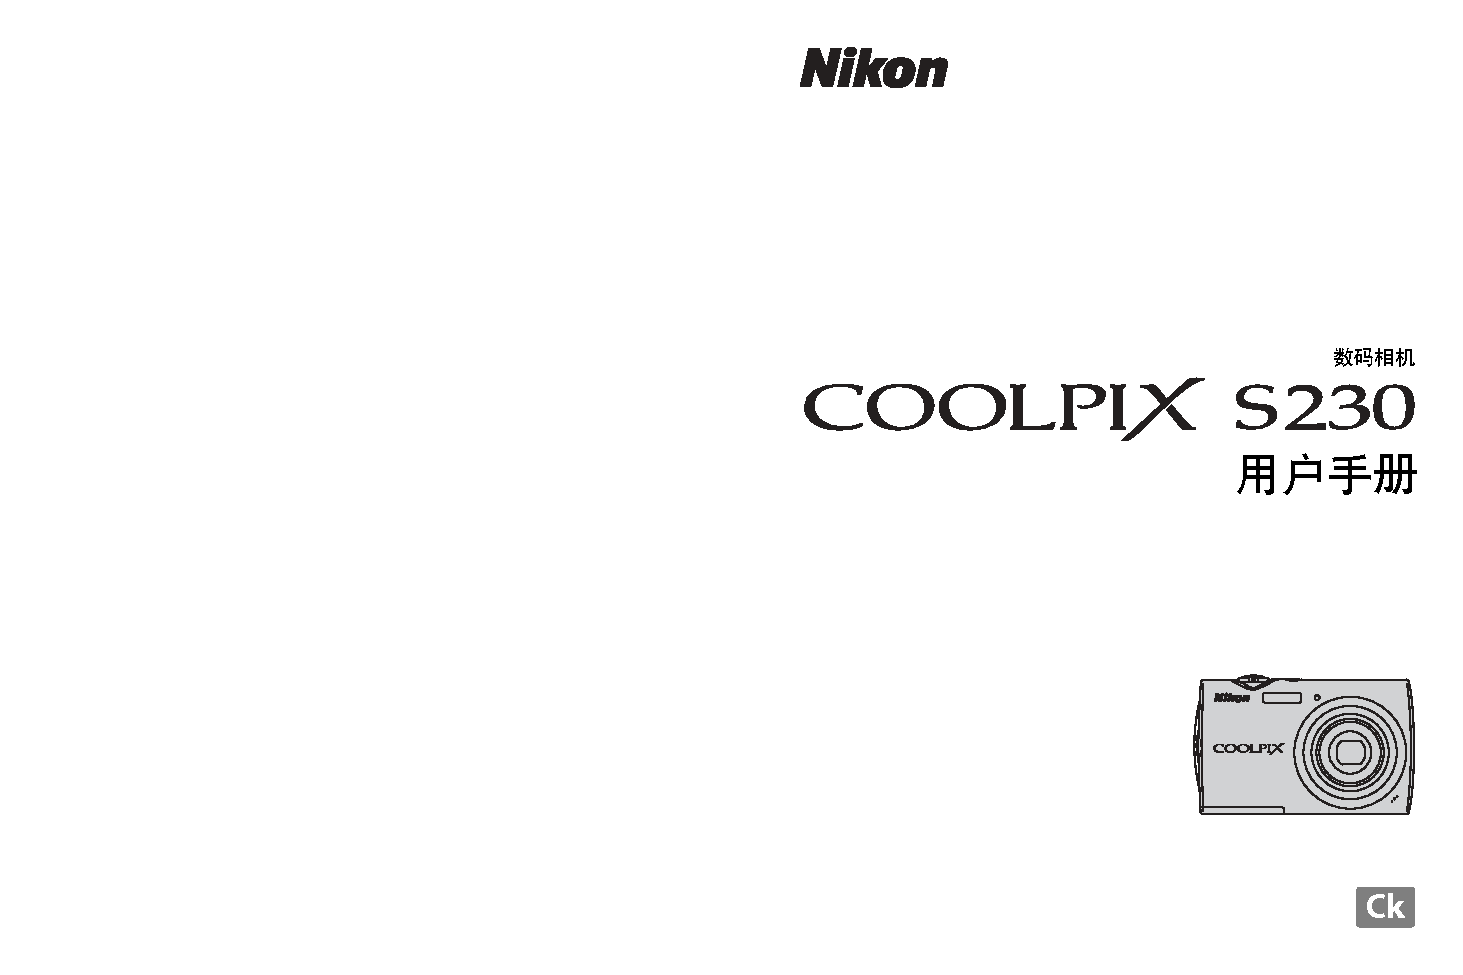 尼康 Nikon COOLPIX S230 使用手册 封面